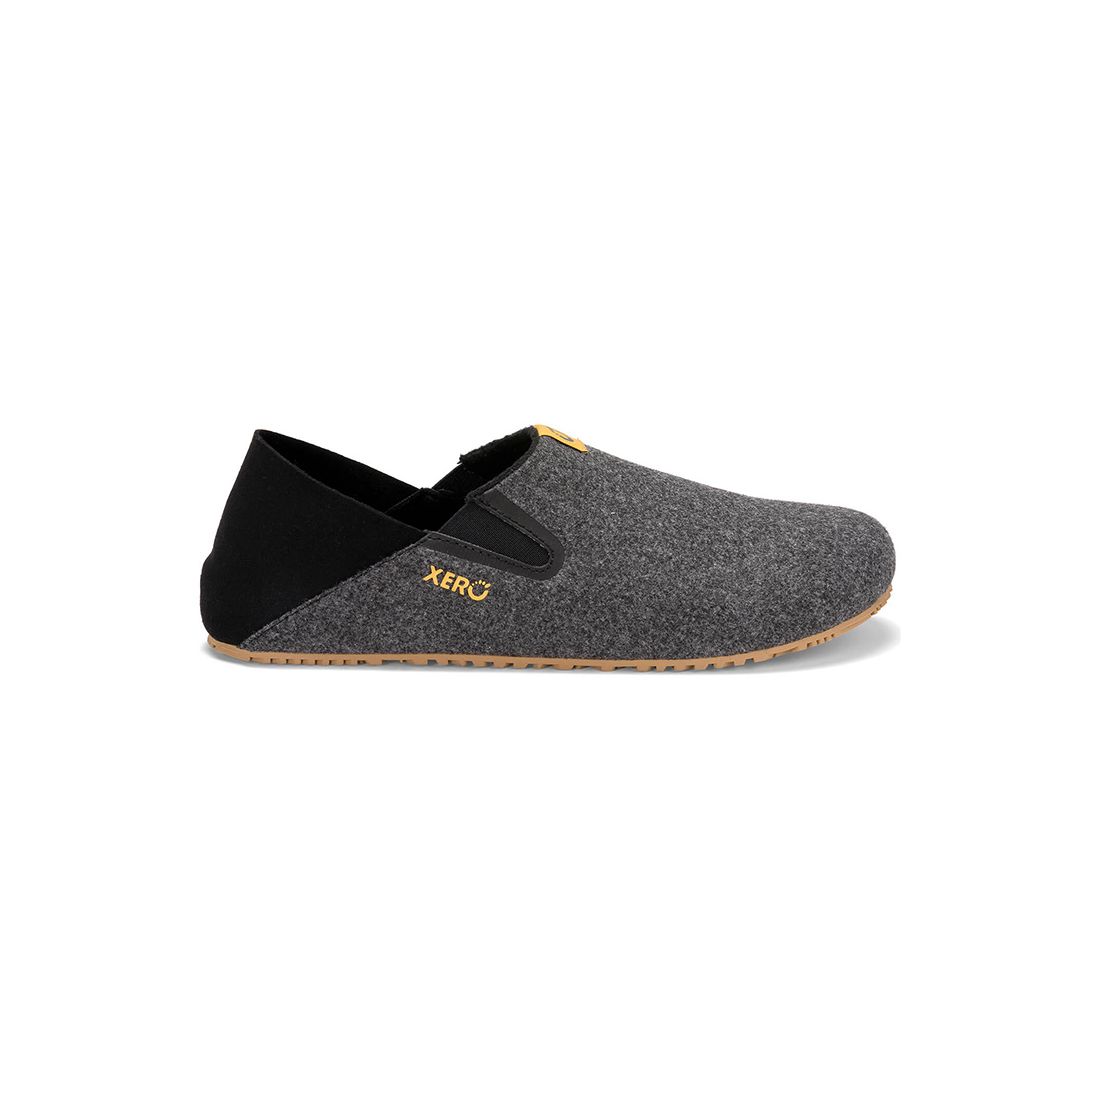 Xero Shoes, calzado minimalista, ligero y cómodo para ent